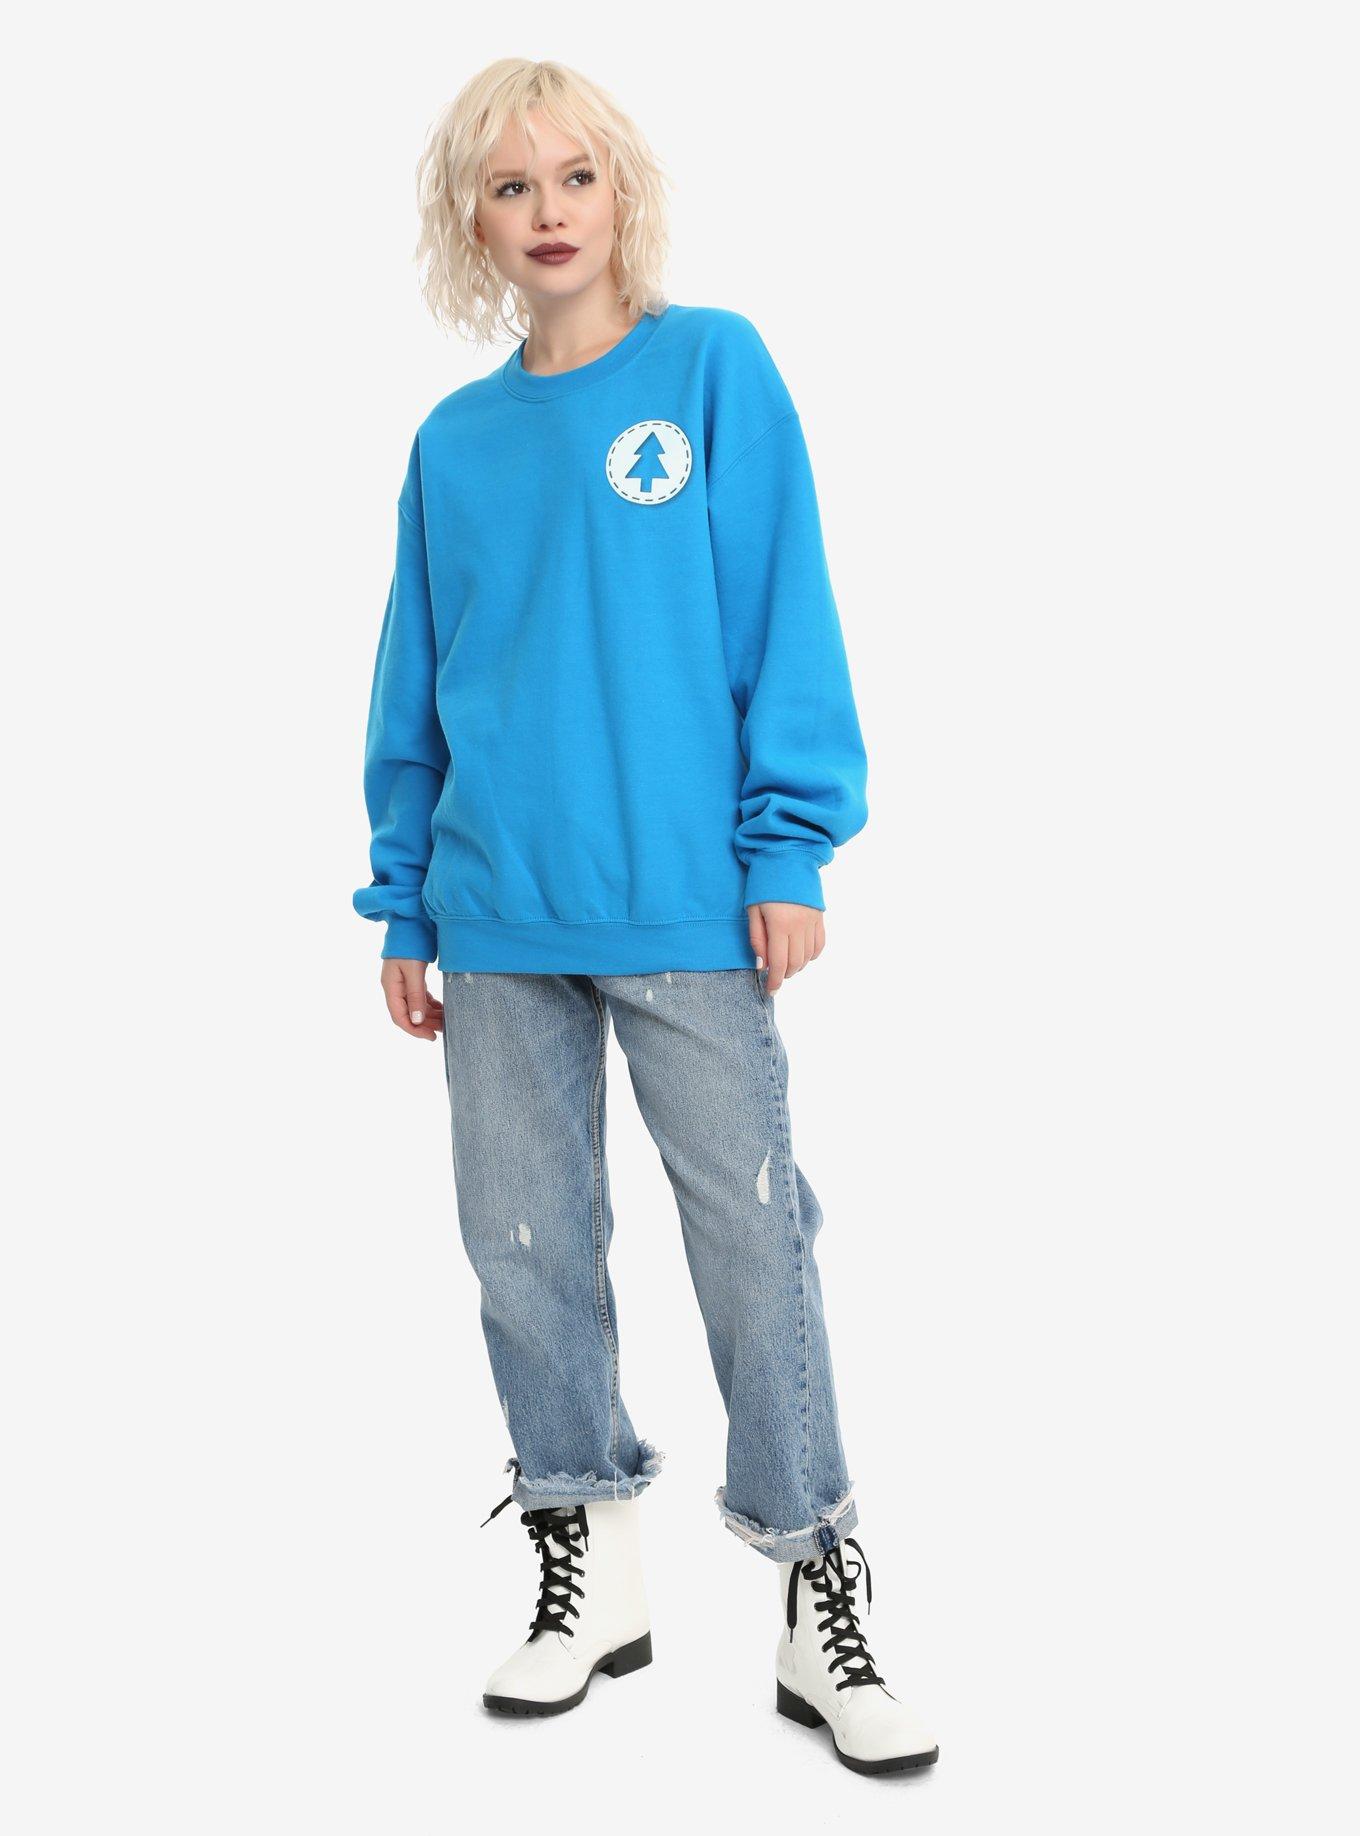 Gravity Falls Dipper Pines Sweatshirt, MULTI, alternate